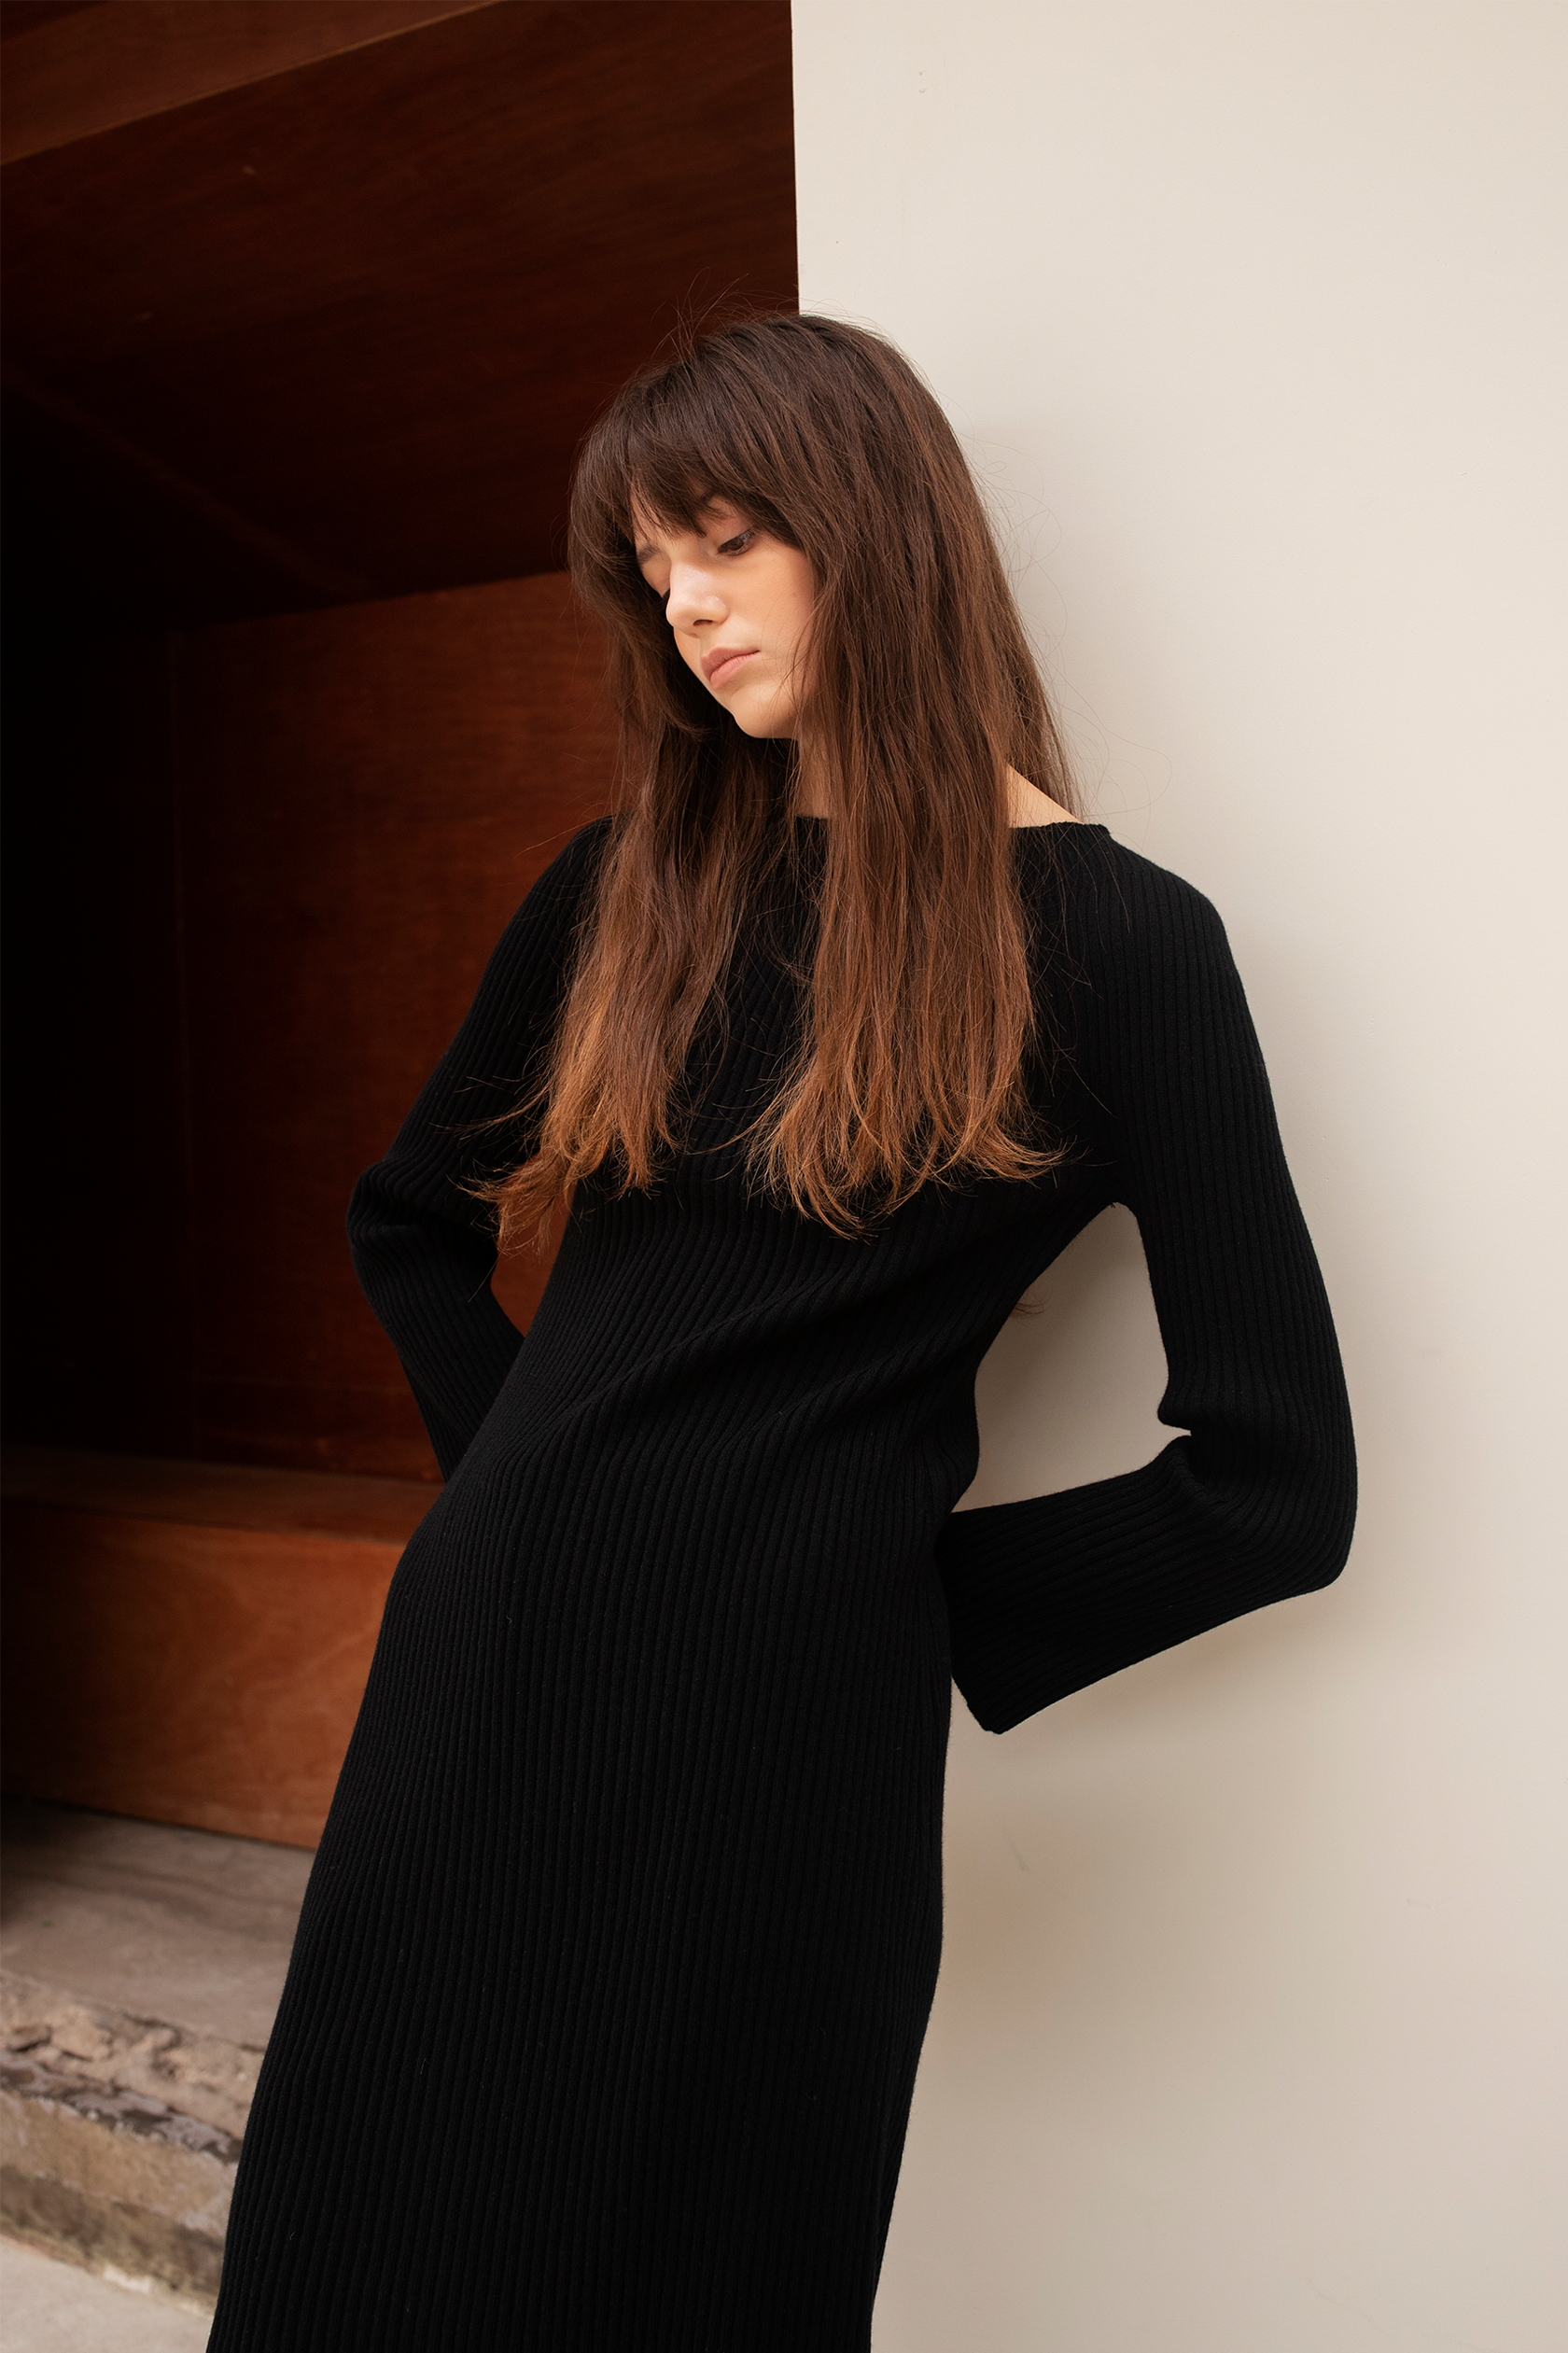 프리미엄 퓨어 캐시미어100 골지 원피스 Premium pure cashmere100 ribbed knit dress - Black